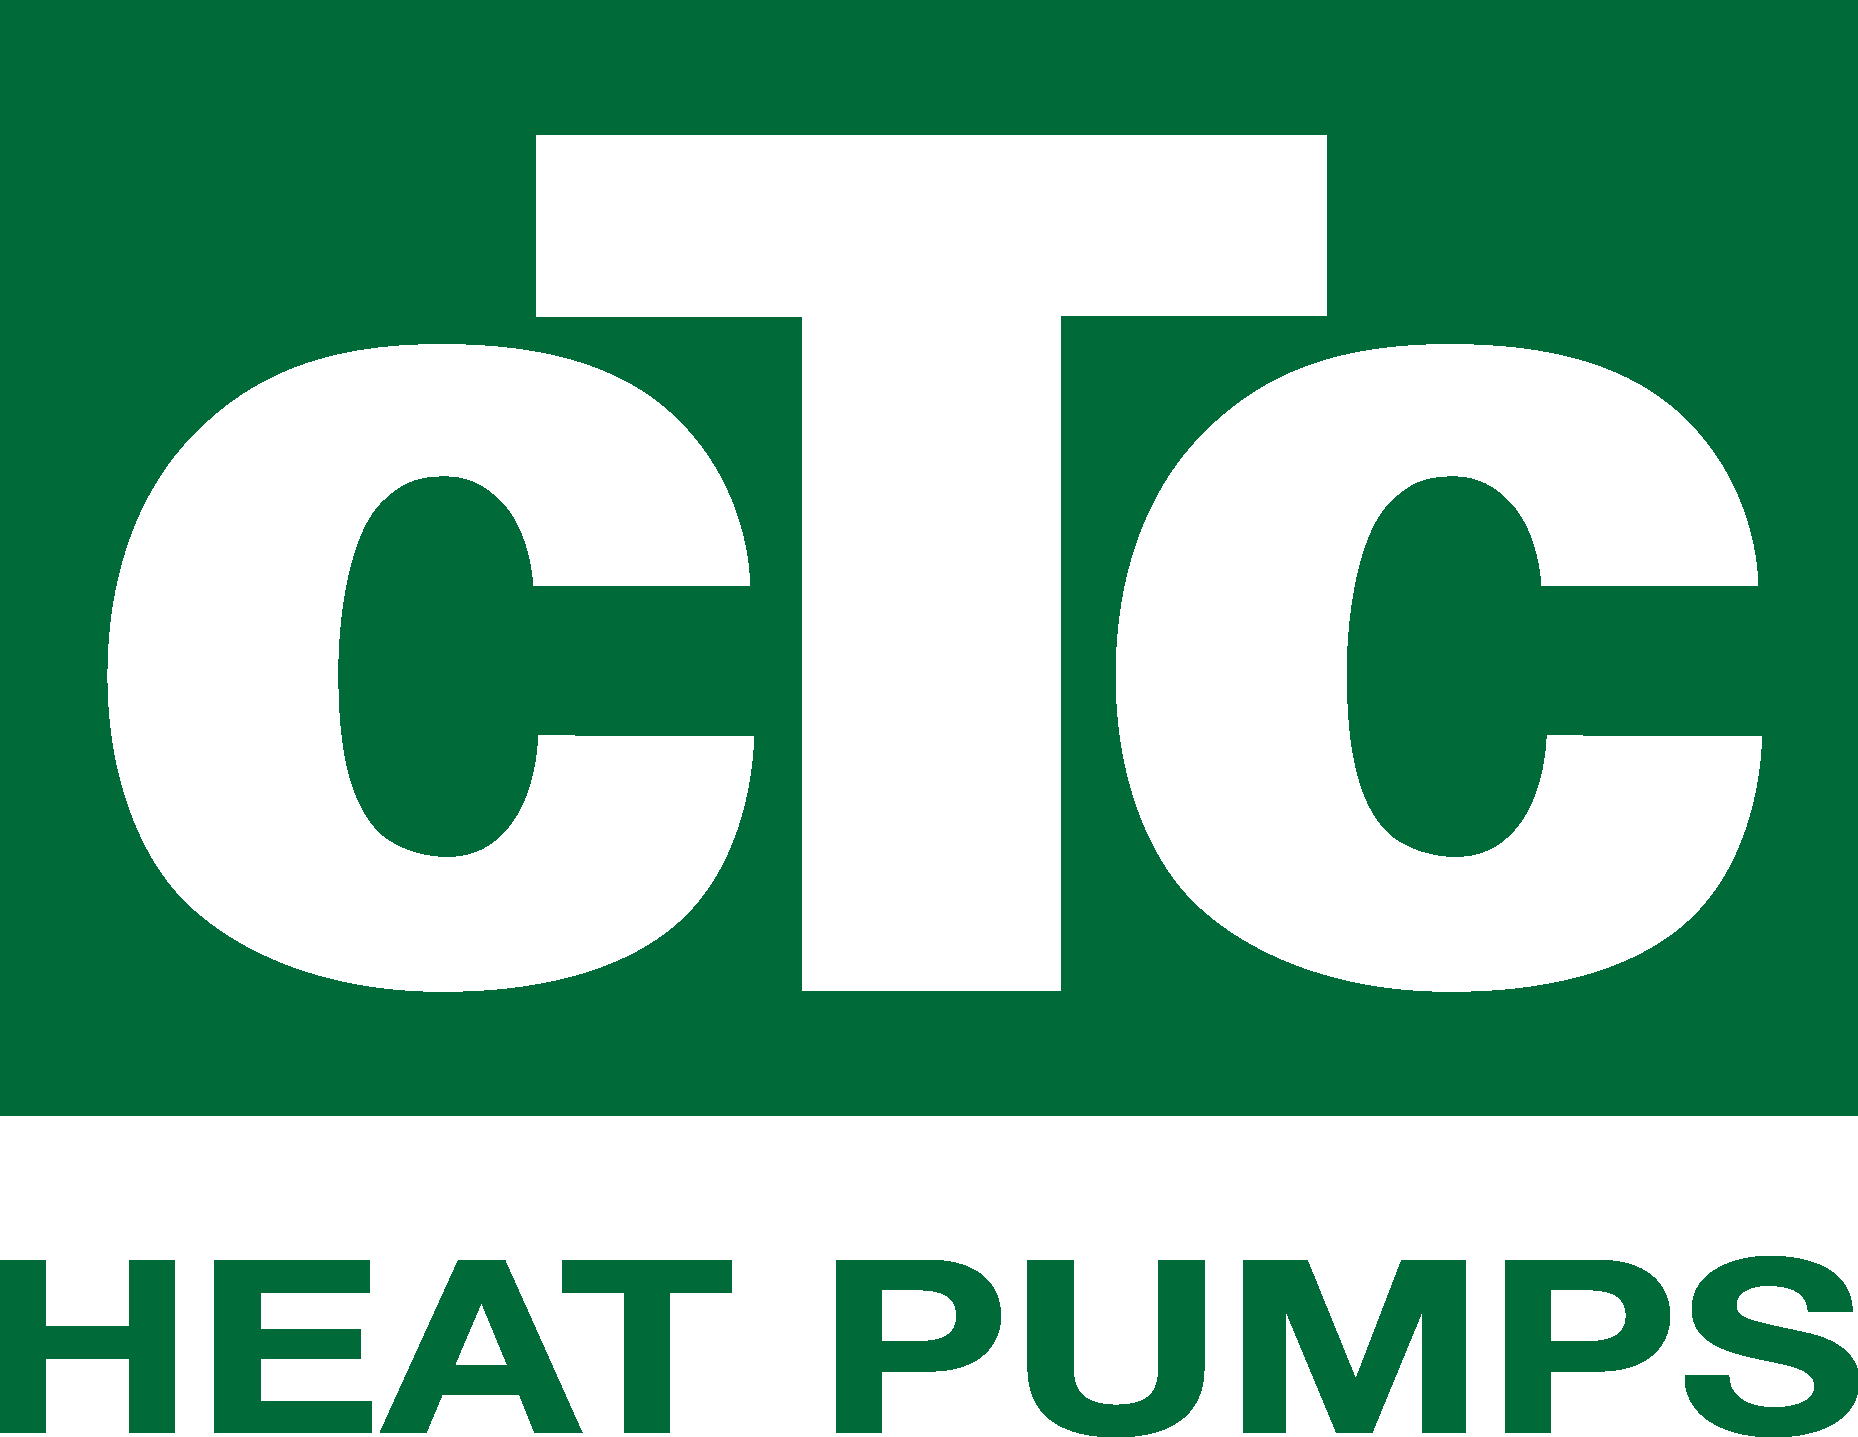 CTC Heat Pumps Logo Vector